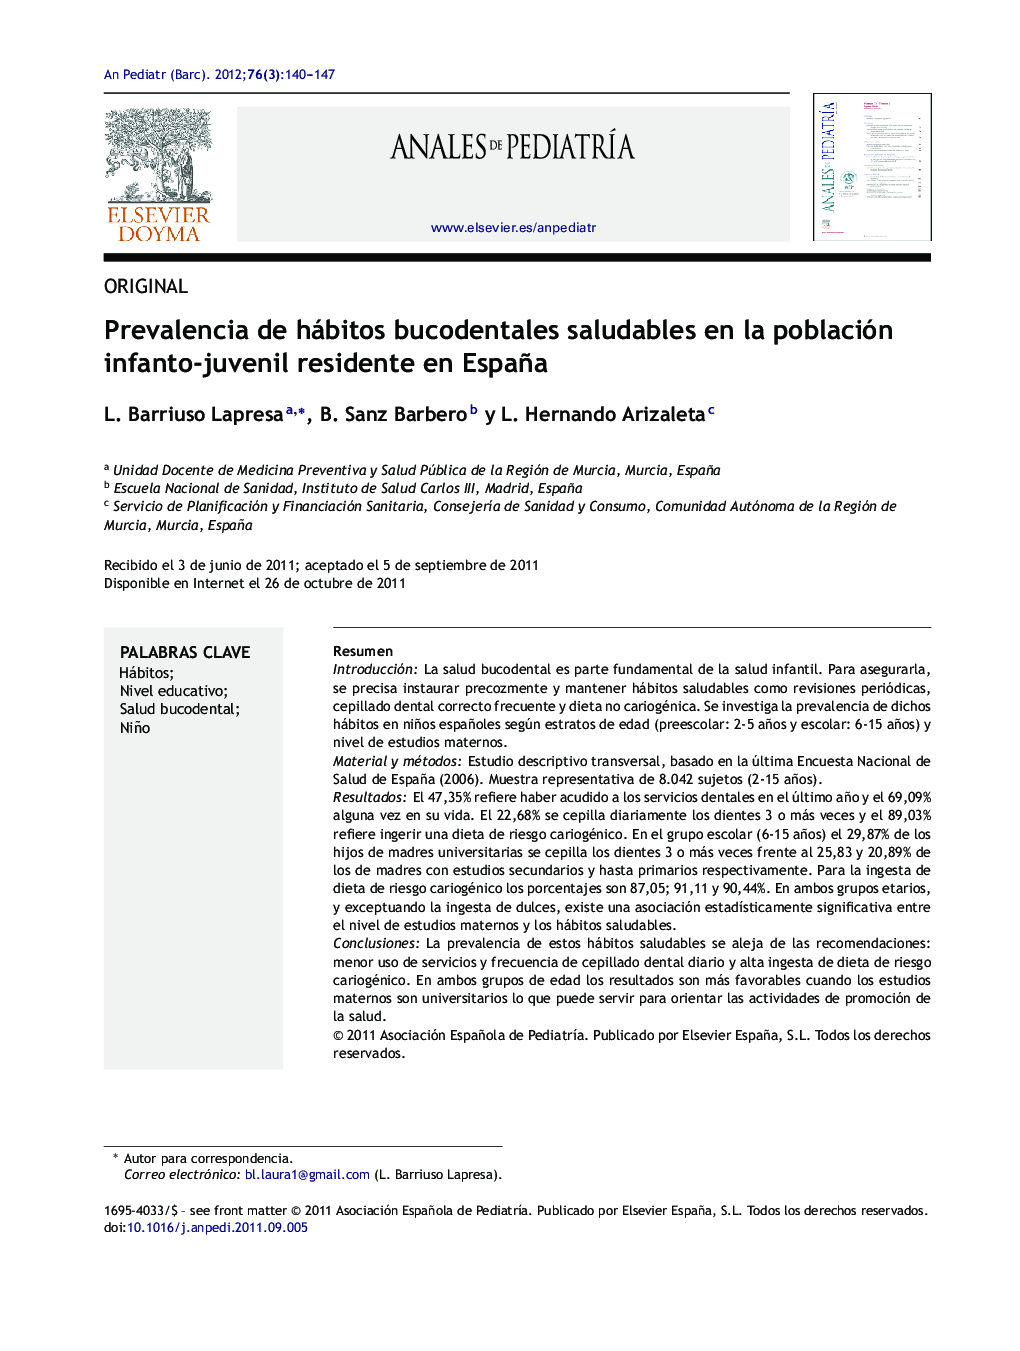 Prevalencia de hábitos bucodentales saludables en la población infanto-juvenil residente en España